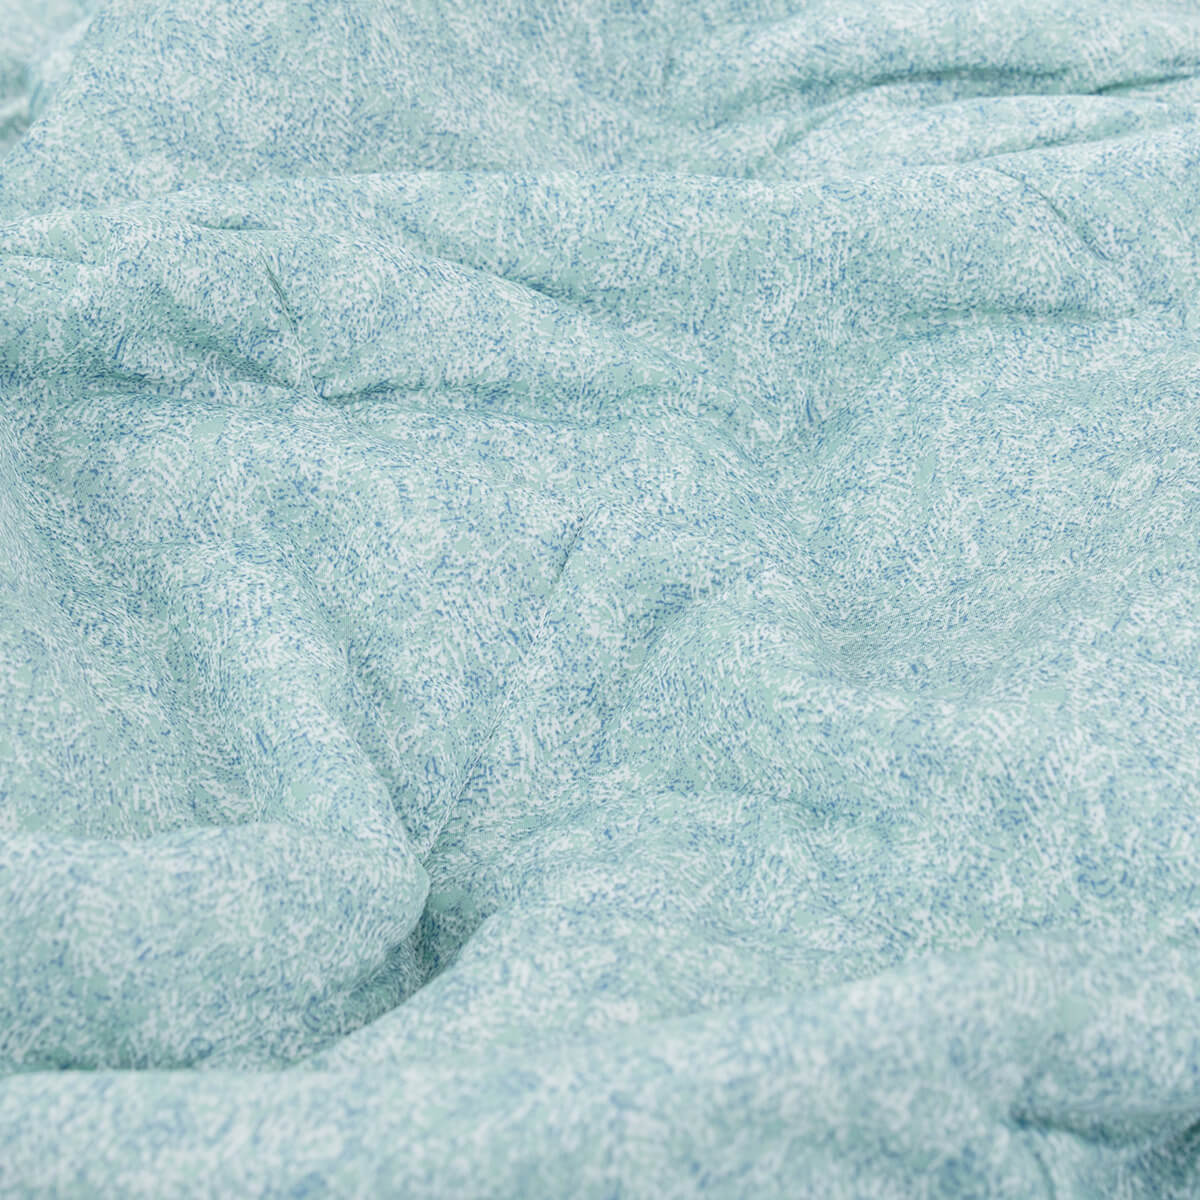 Chăn công nghệ làm mát Amando Azami premium vải sợi lạnh air cooling giải nhiệt cao tối ưu giấc ngủ 200x220cm (Giao màu ngẫu nhiên)